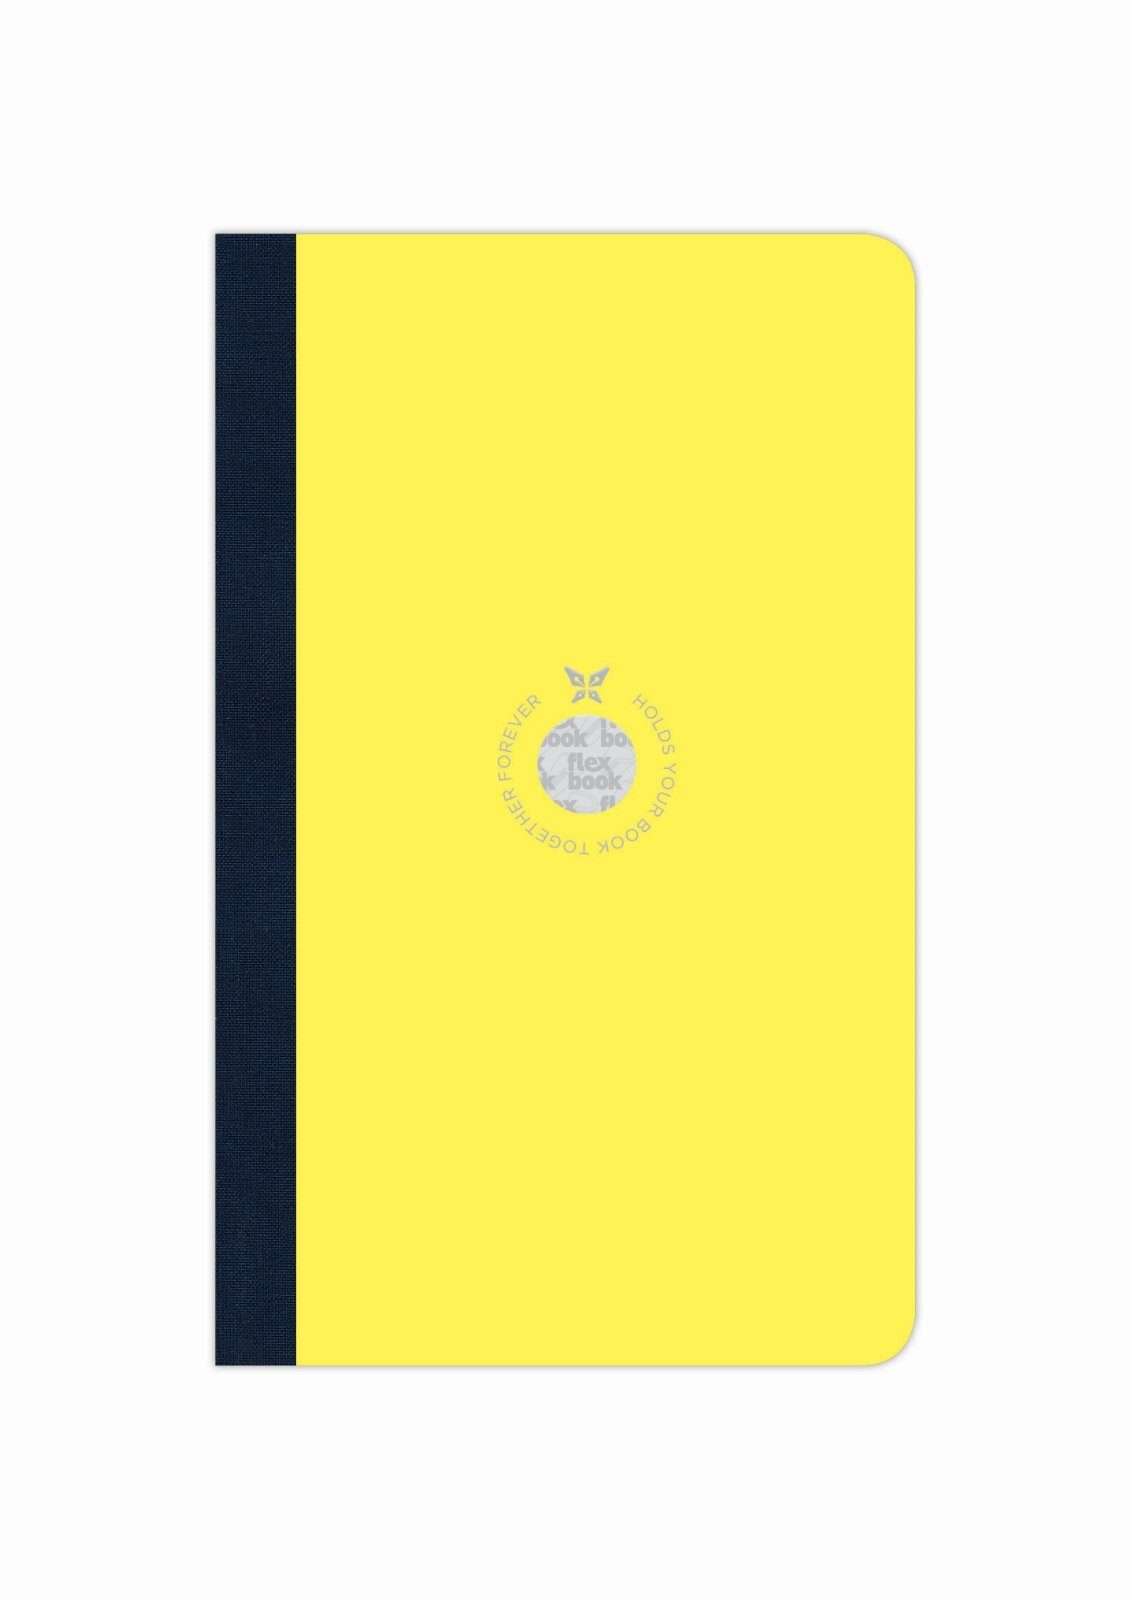 13*21cm Liniert 160 Flexbook Flexbook Smartbook Ökopapiereinband Gelb Notizbuch Größen/Fa Seiten viele